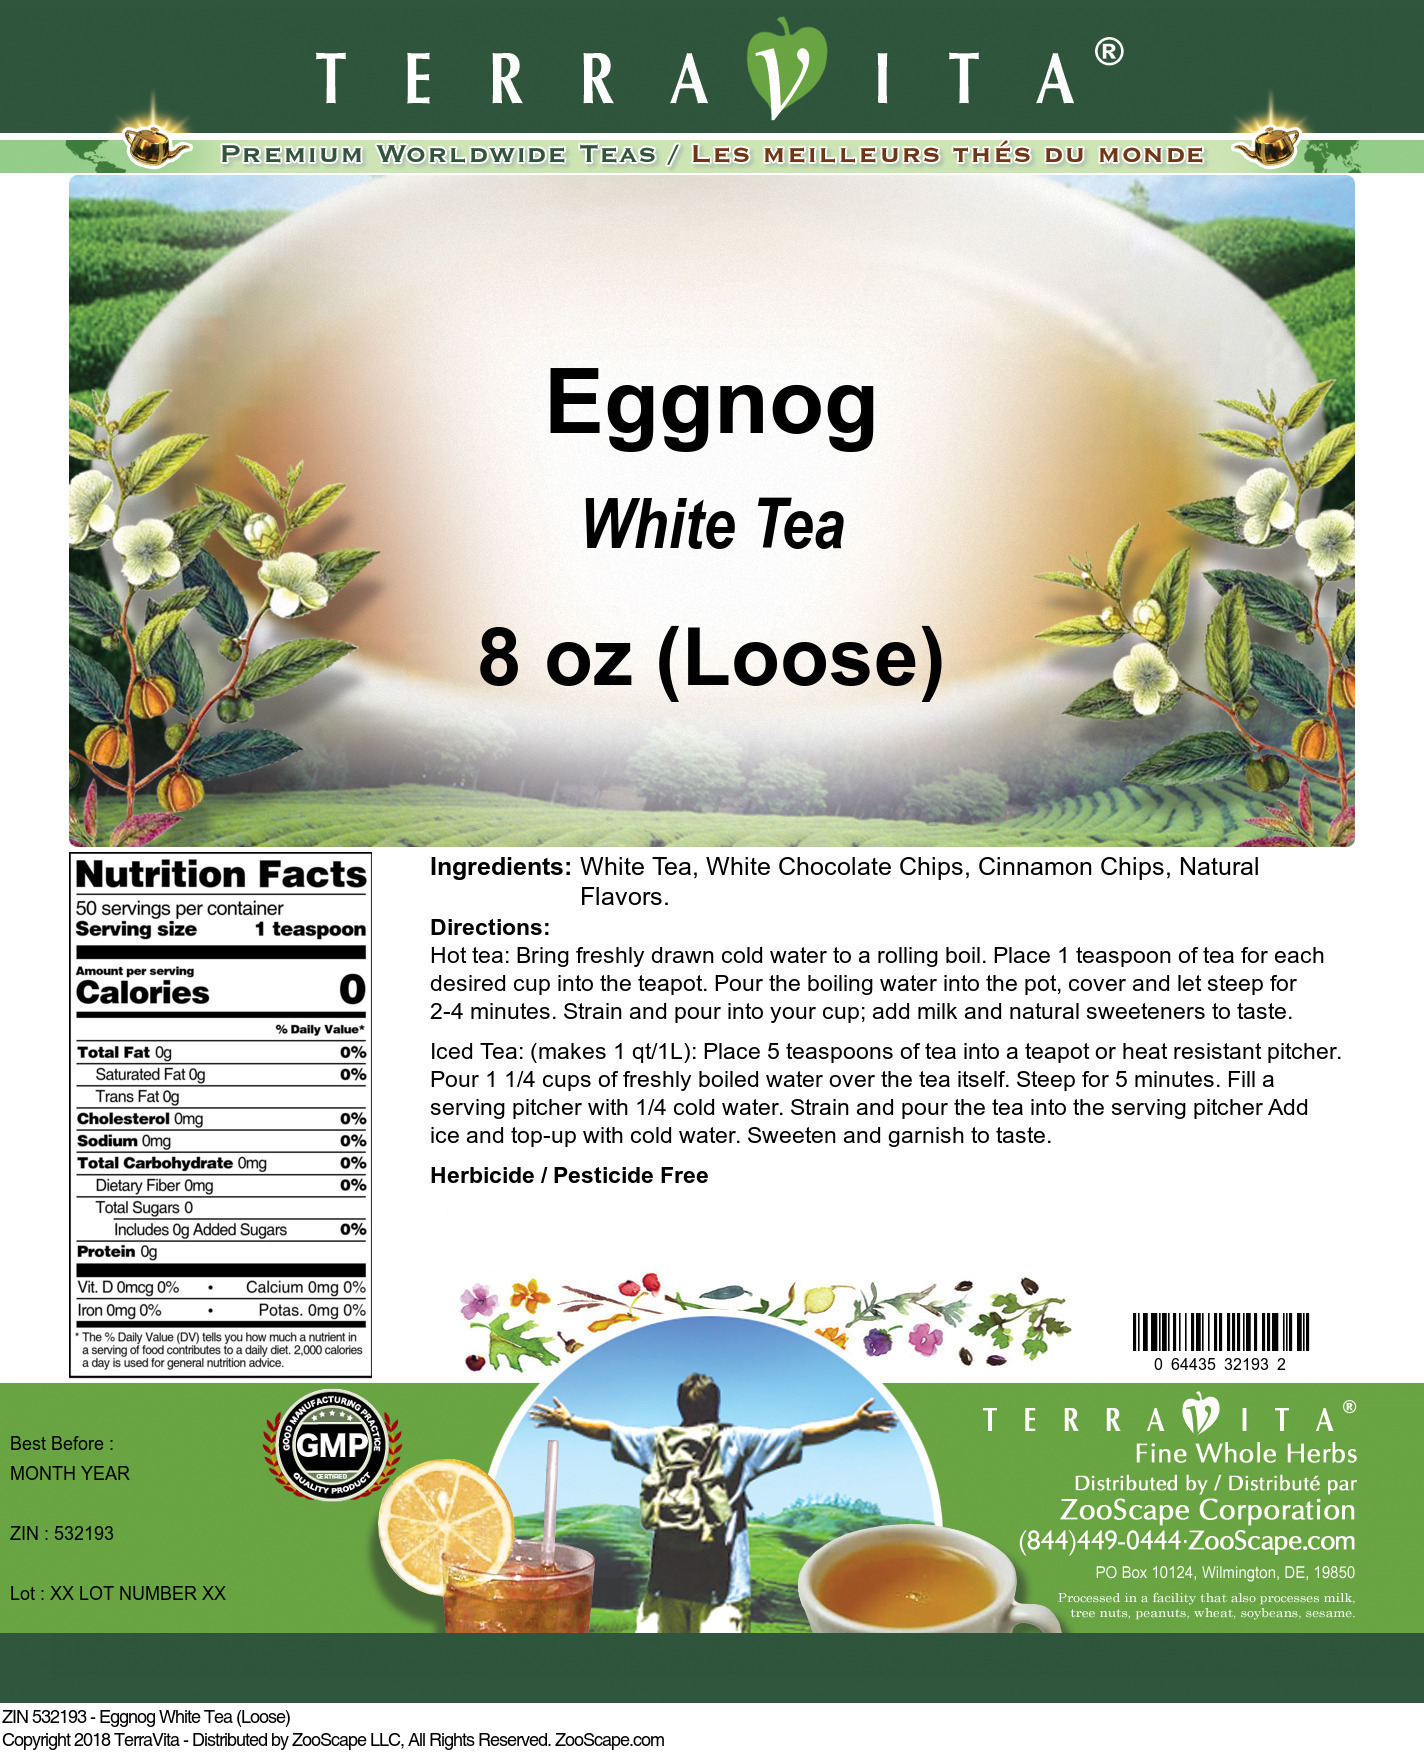 Eggnog White Tea (Loose) - Label